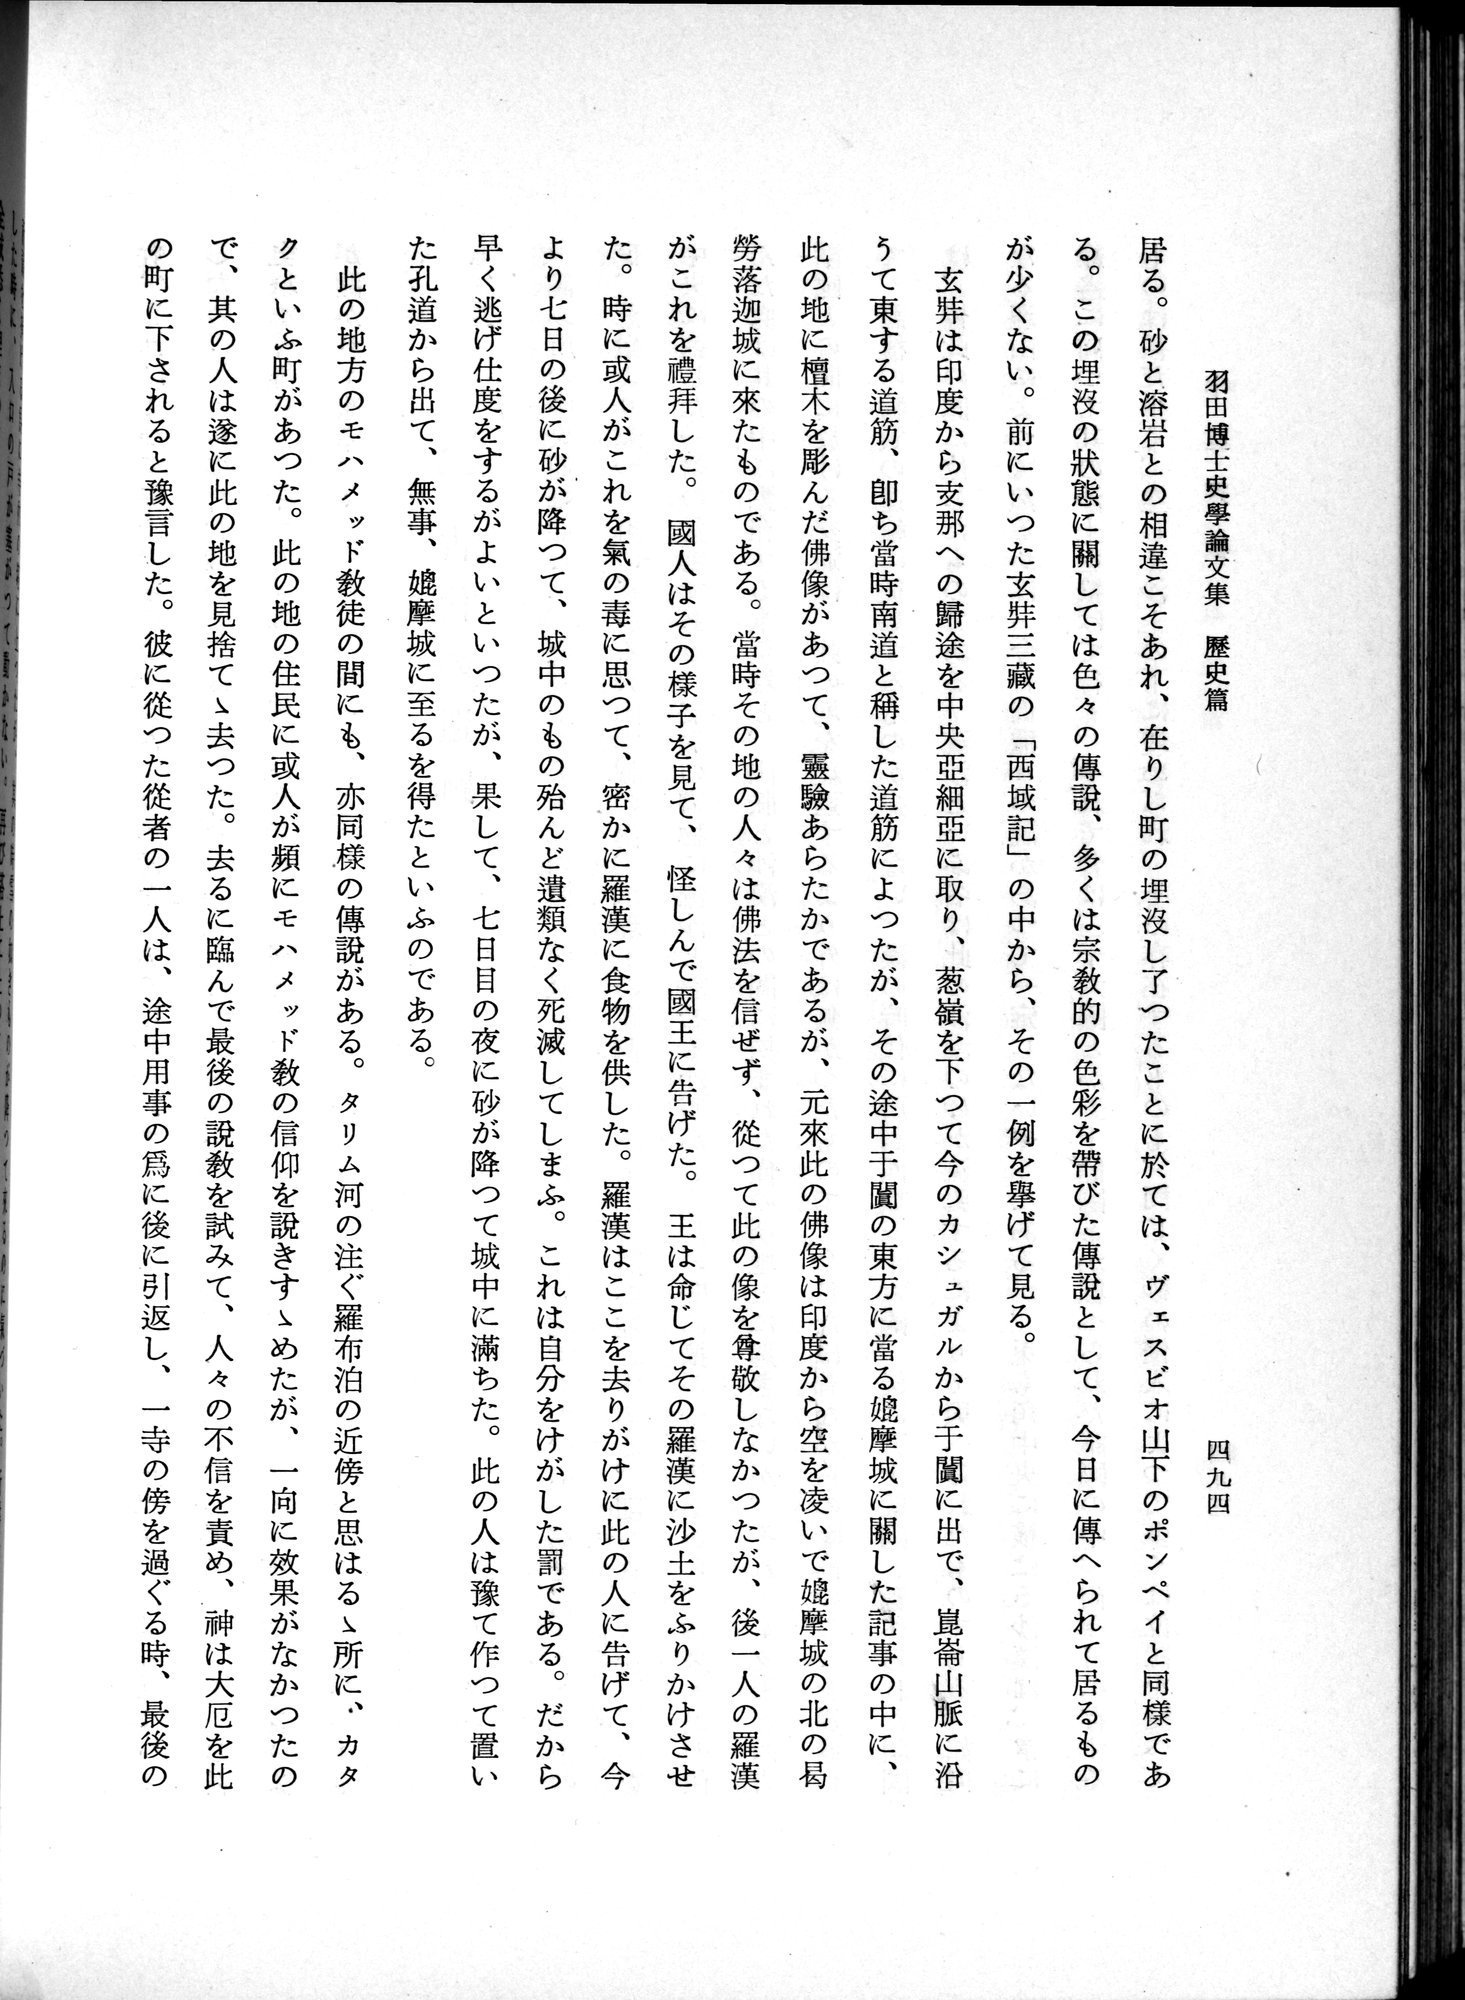 羽田博士史学論文集 : vol.1 / Page 532 (Grayscale High Resolution Image)